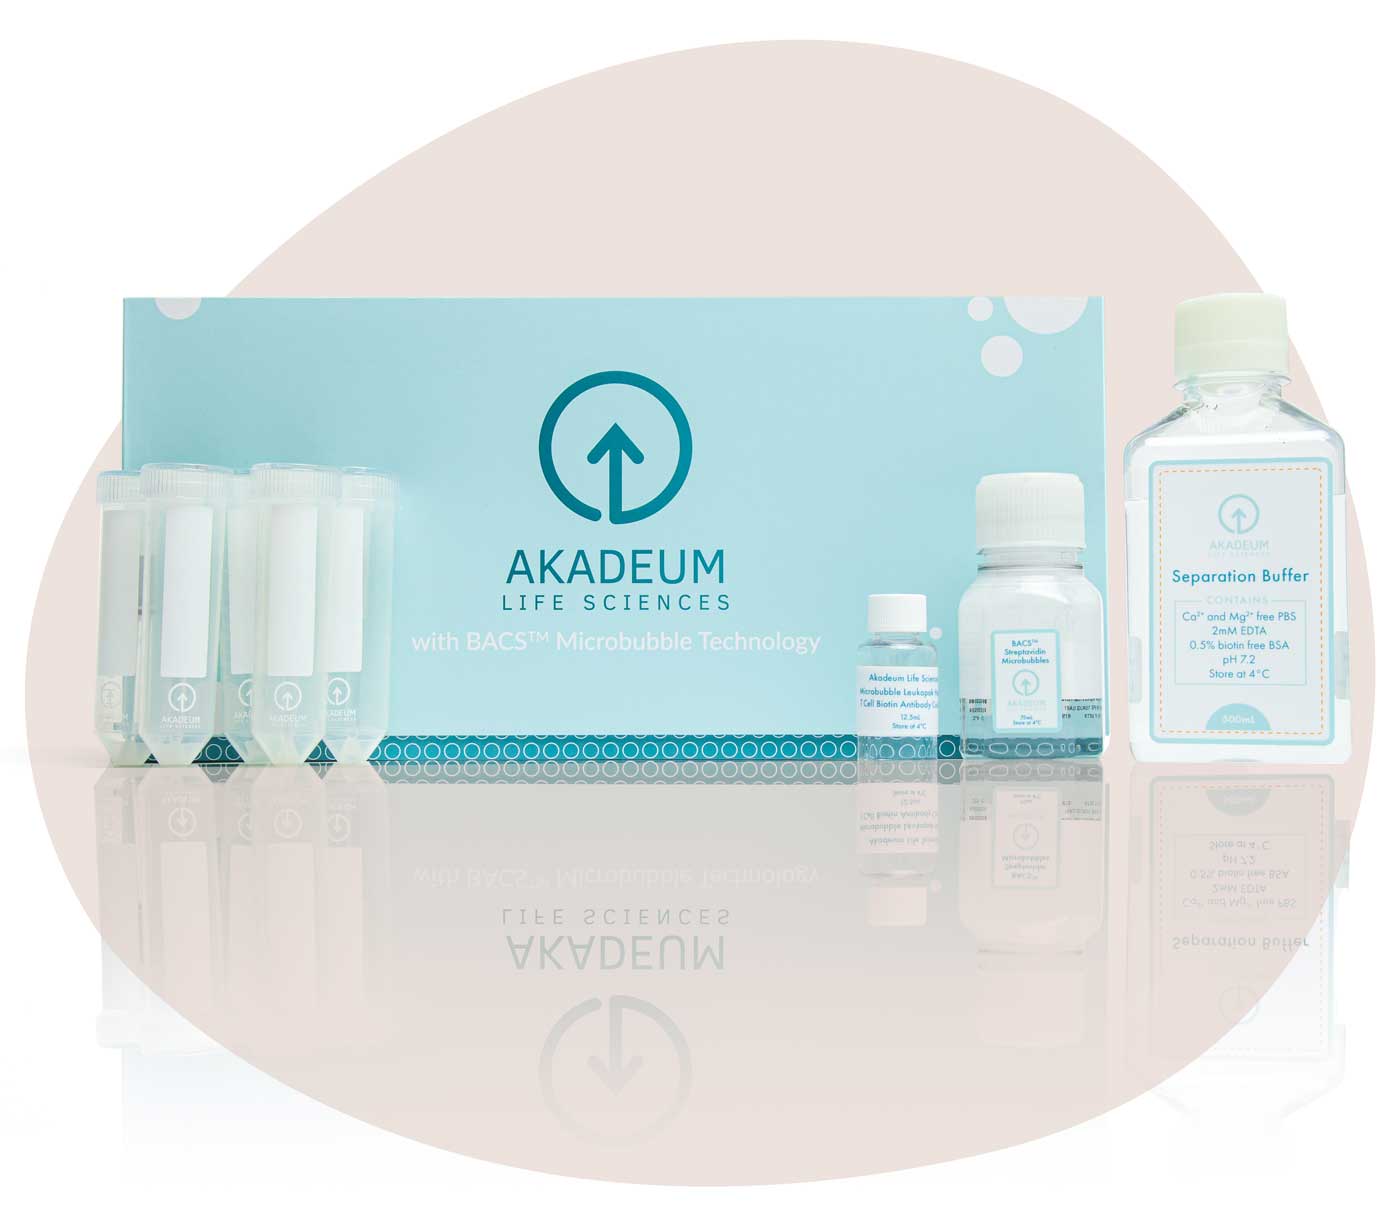 Akadeum's Products